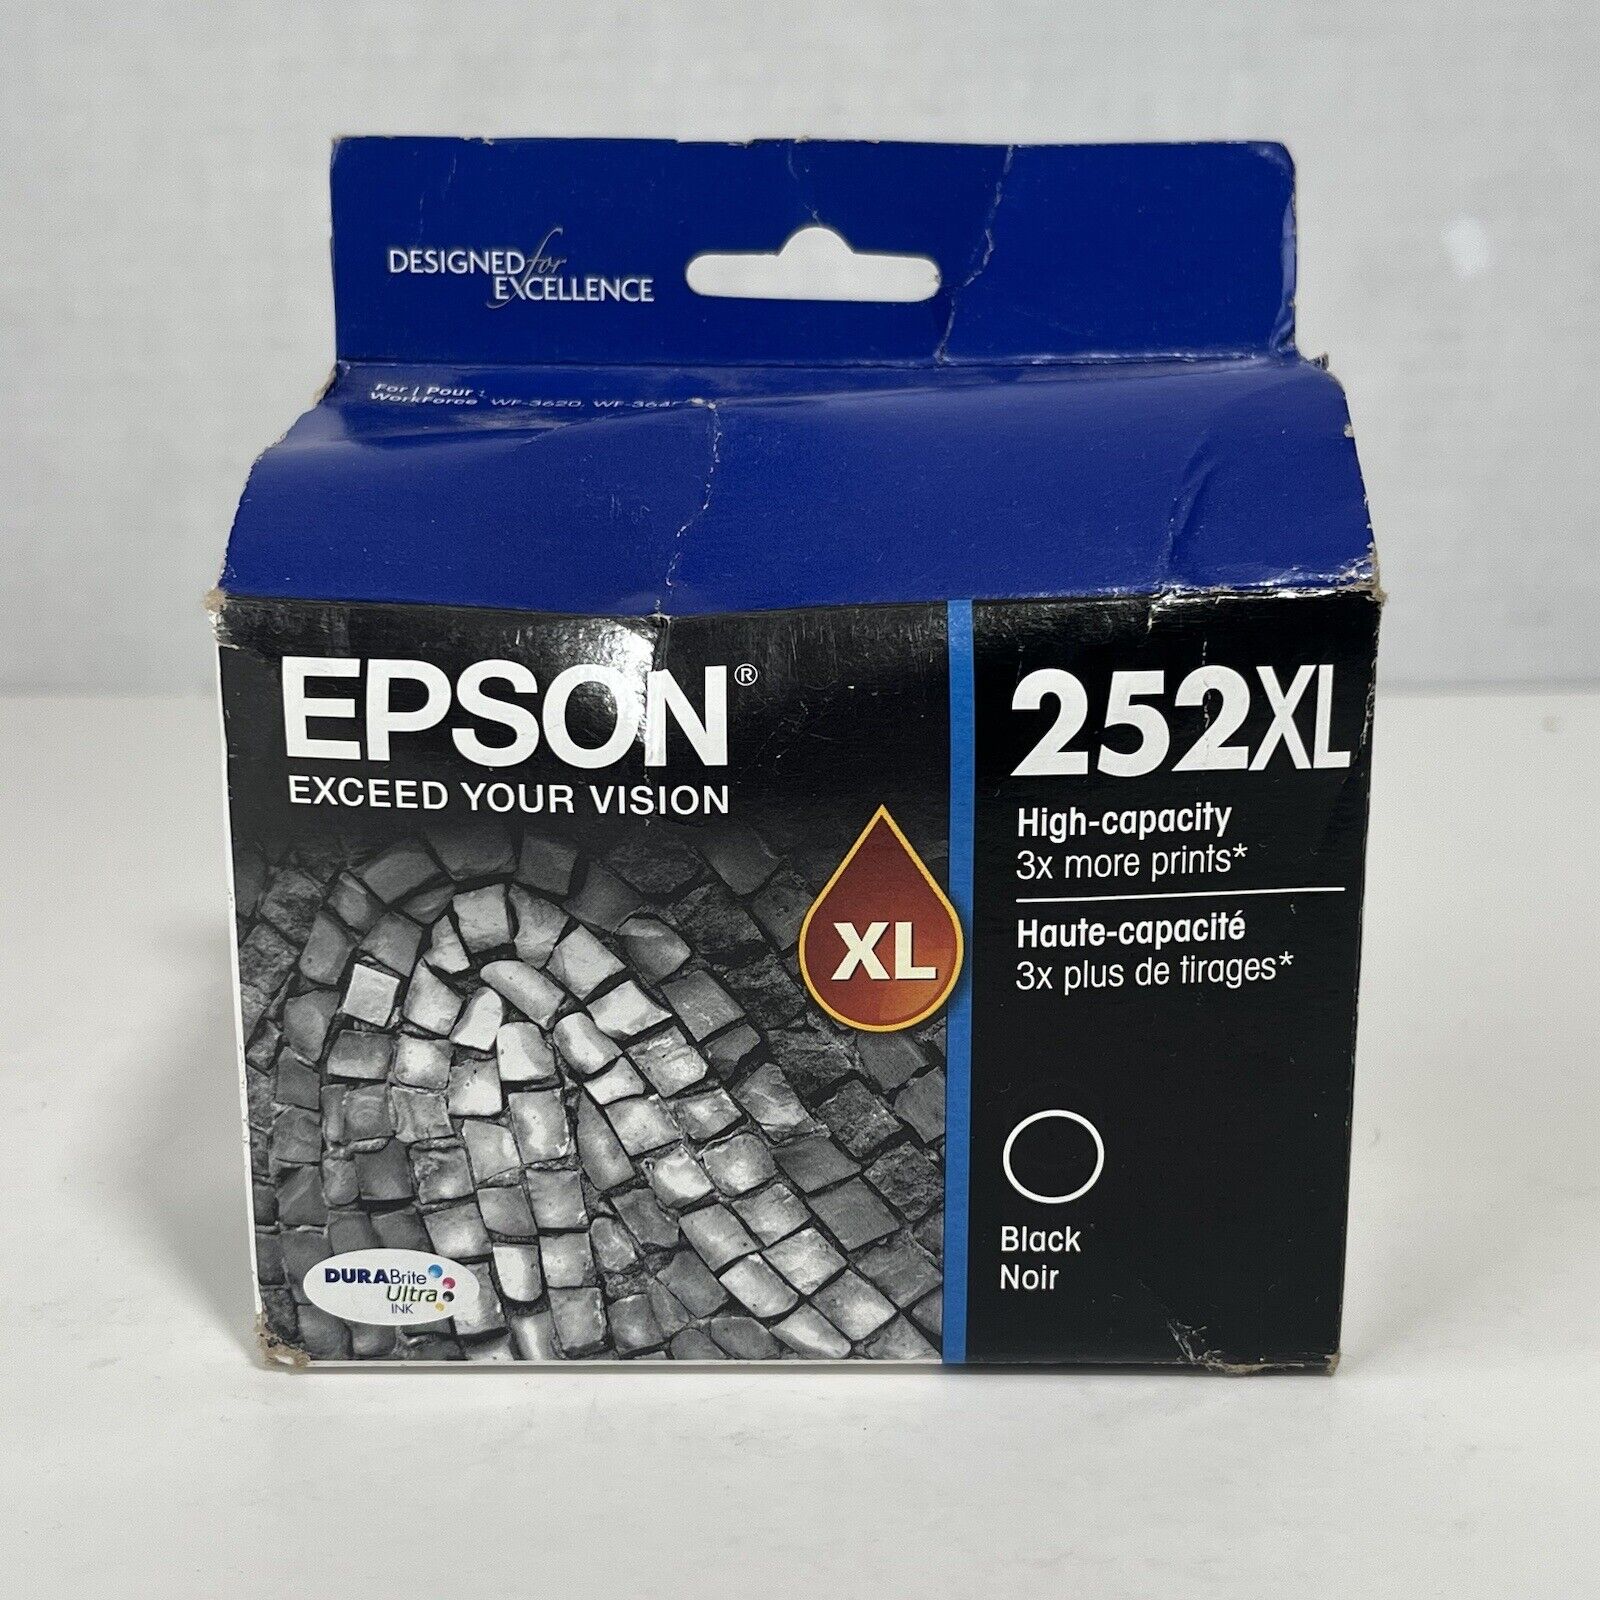 Genuine Epson 252XL Black Ink WF7610 WF7110 WF7710 WF7620 WF7720 New in Box